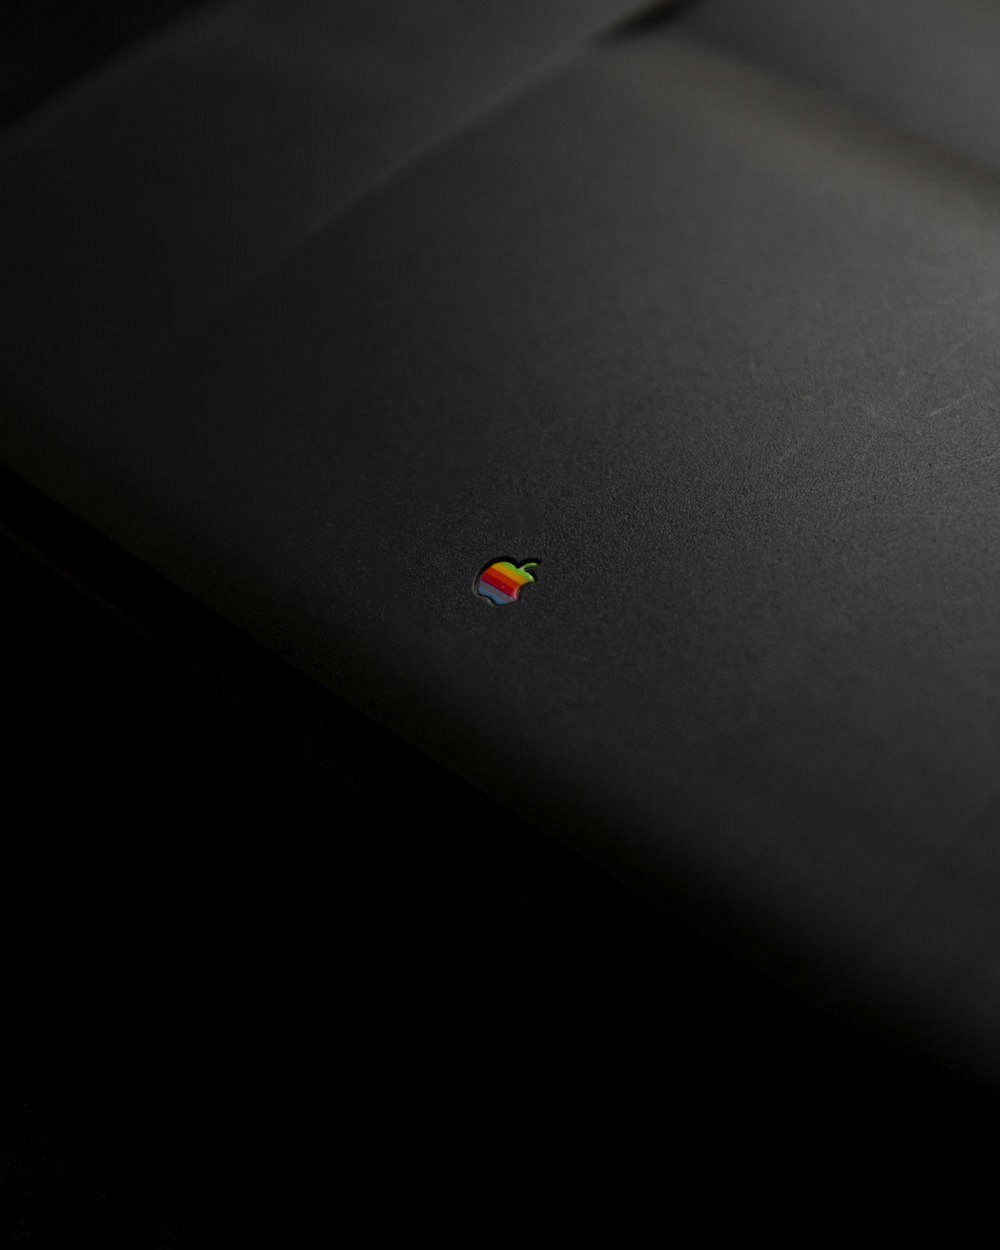 MacBook argenté avec pilule de médicament ronde rouge et jaune